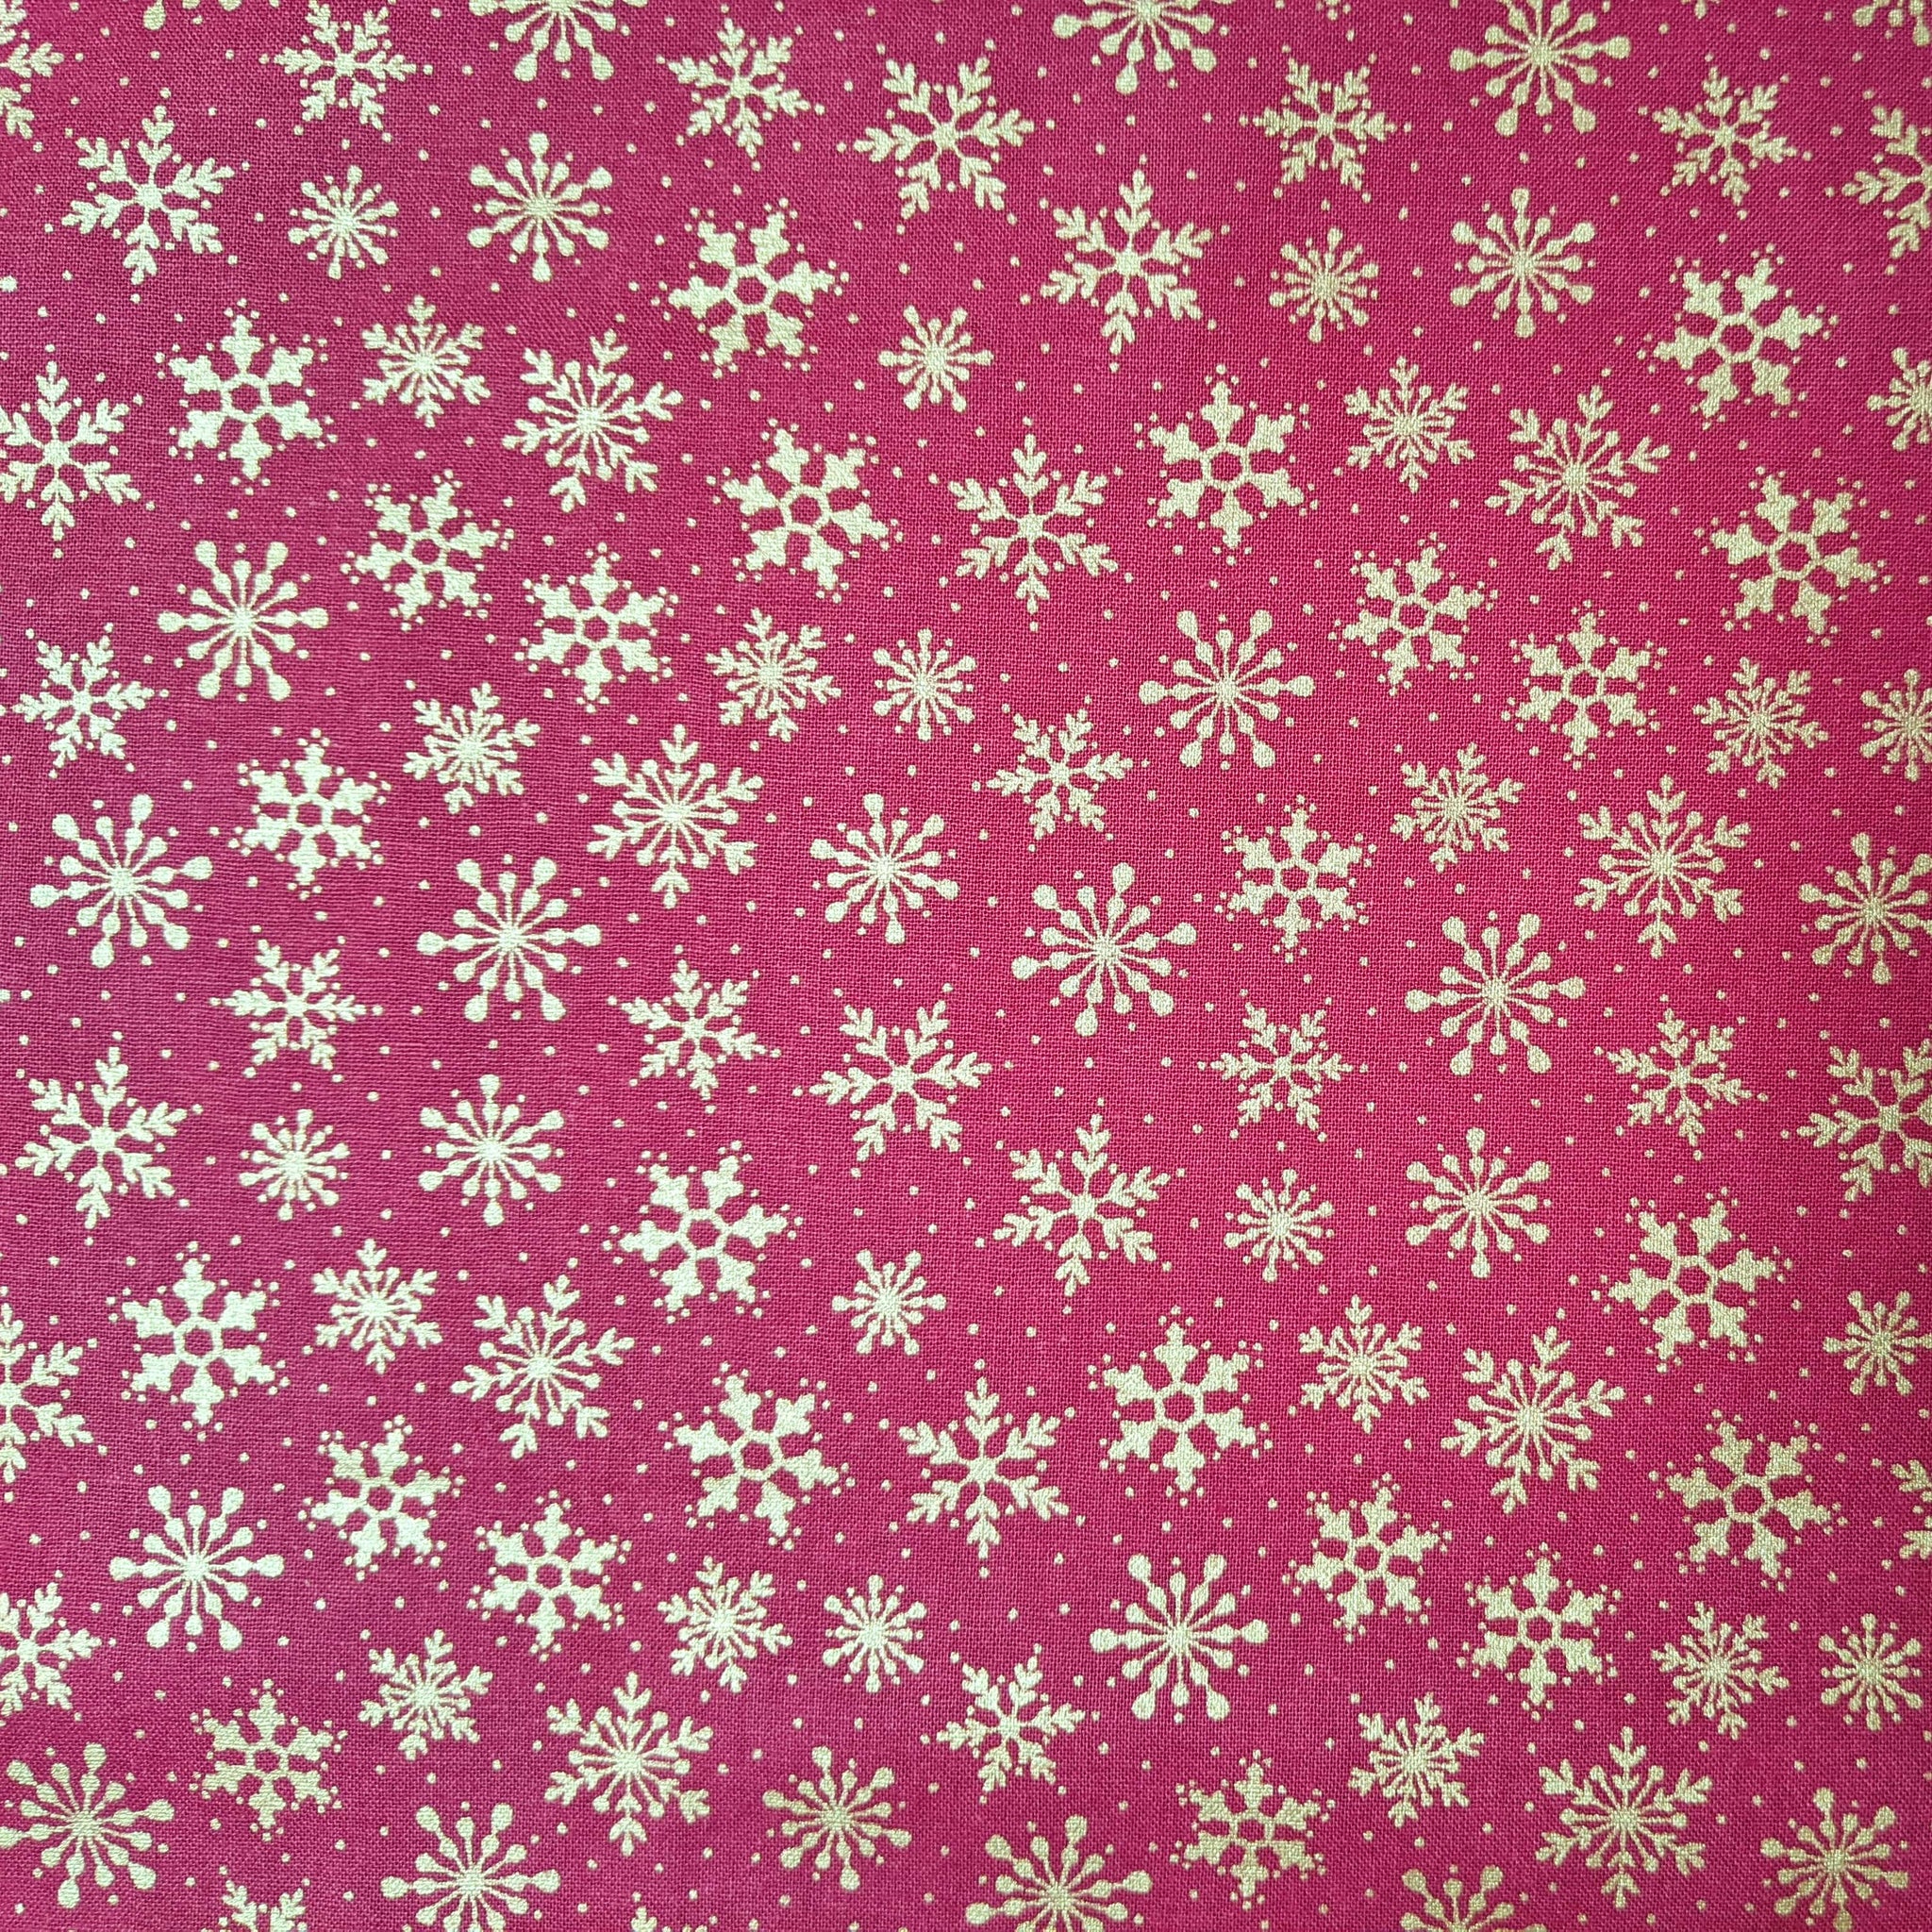 Metallic snowflakes on red - 100% cotton - Metallic Snowflakes - Craft Cotton Co